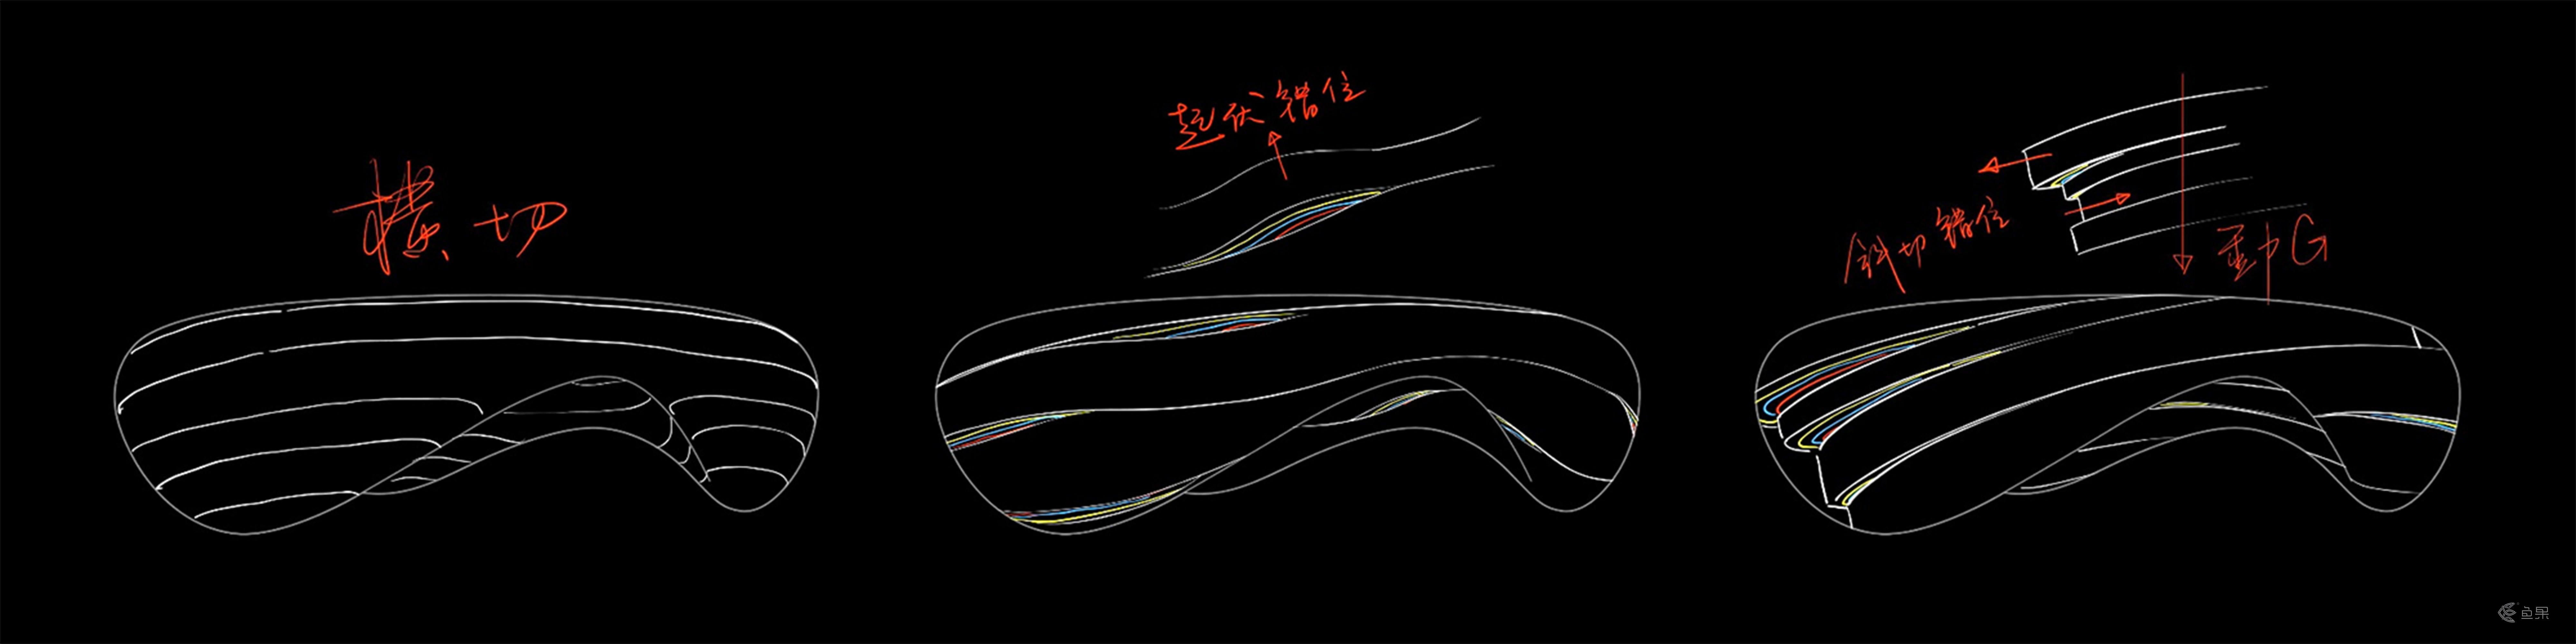 鱼果文化科技-奔驰发布会新媒体艺术装置“时空之环”.jpg